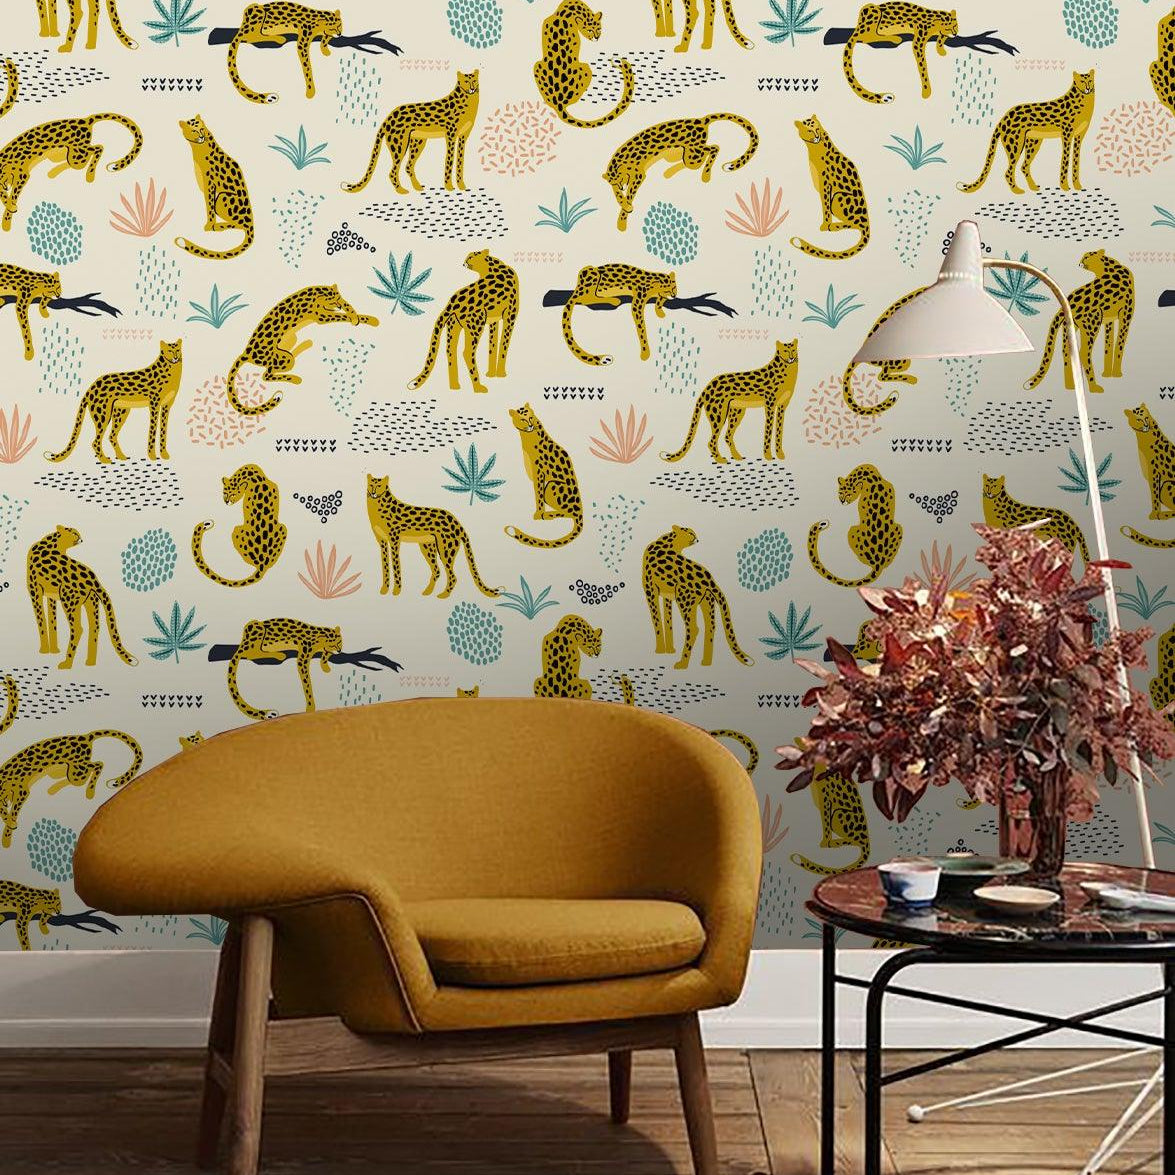 3D Yellow Leopard Wall Mural Wallpaper 55- Jess Art Decoration